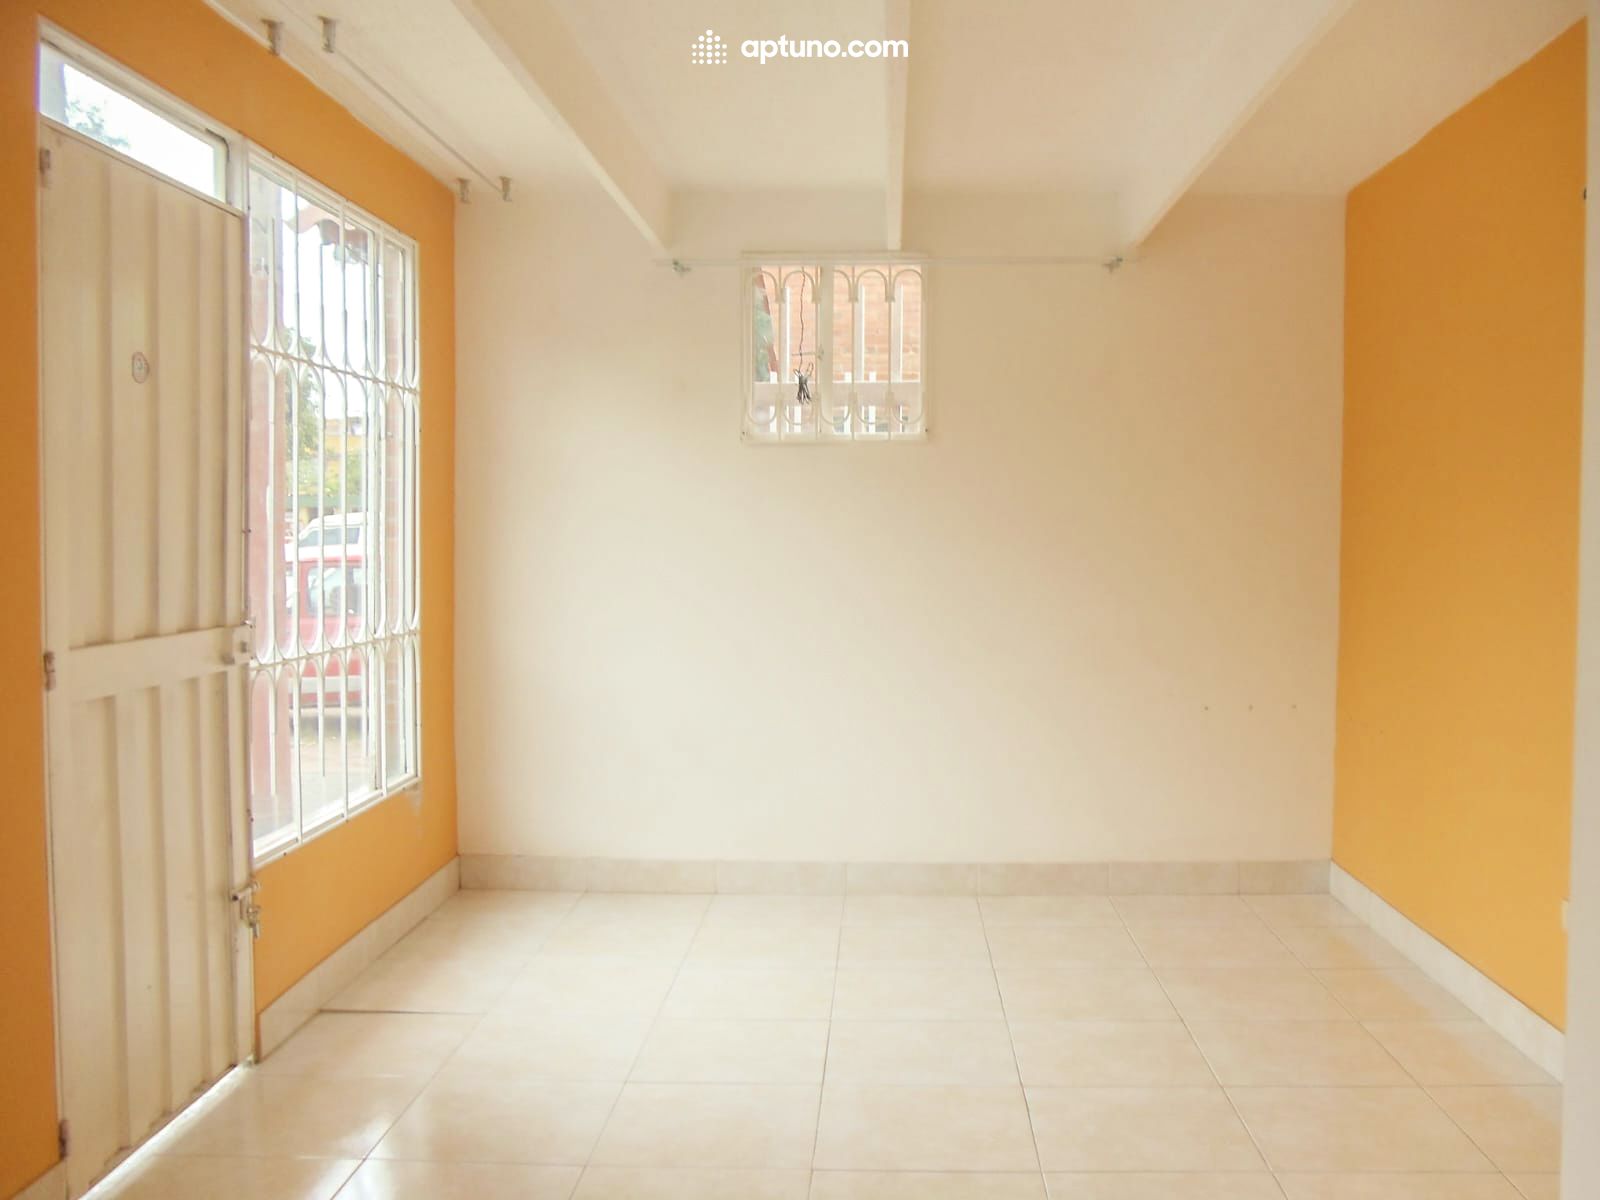 Apartamento en arriendo Villas de Granada I 33 m² - $ 1.470.000,00